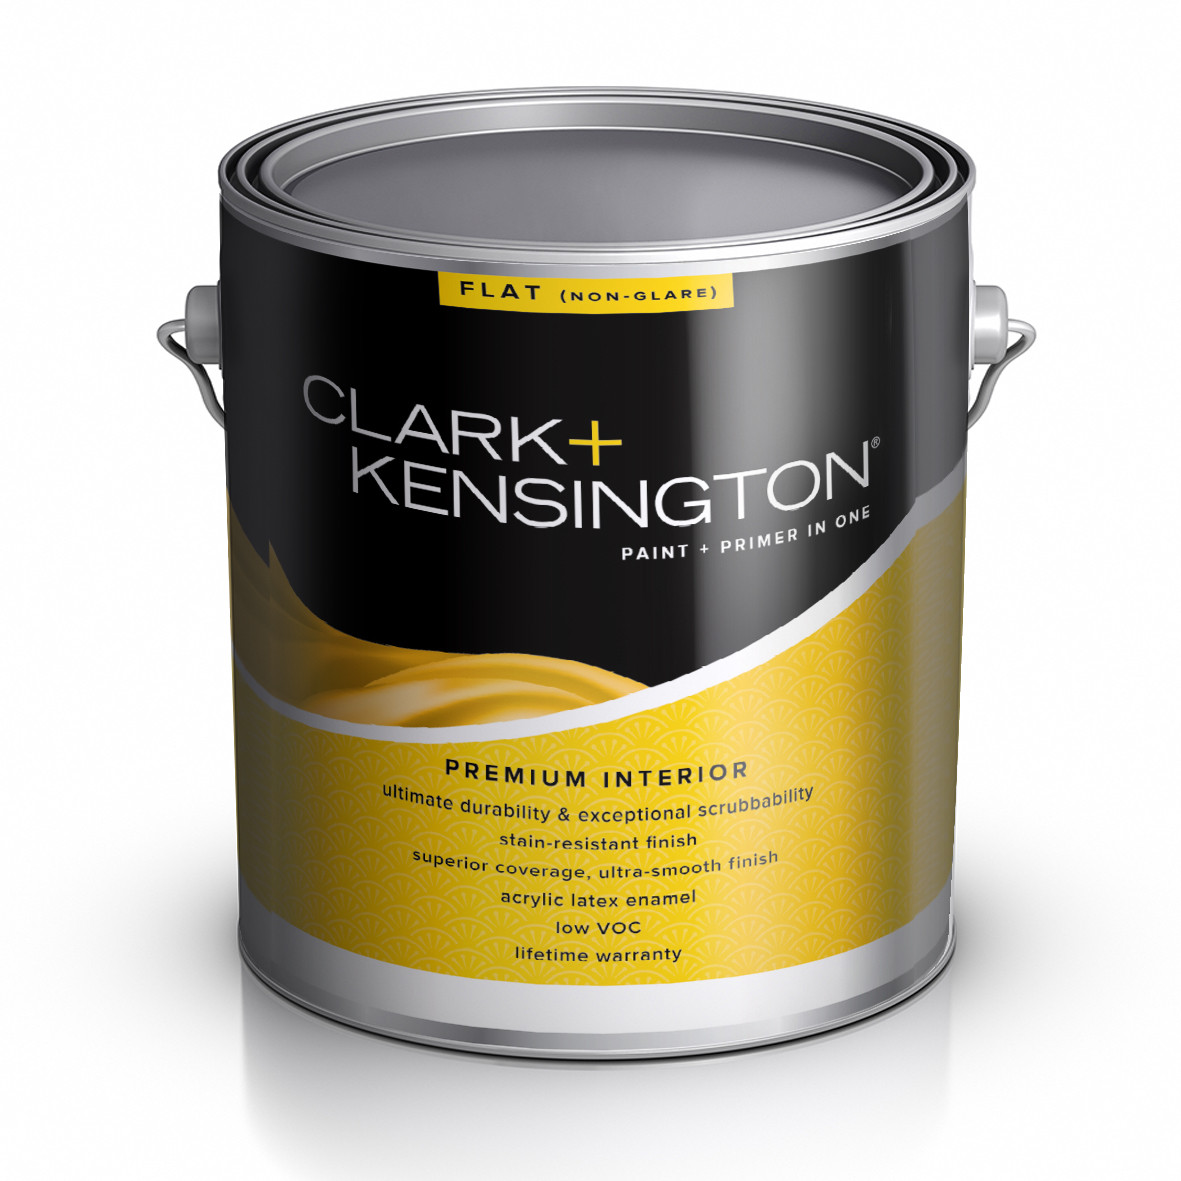 Clark Kensington Paint Primer in one Premium Interior Flat А база